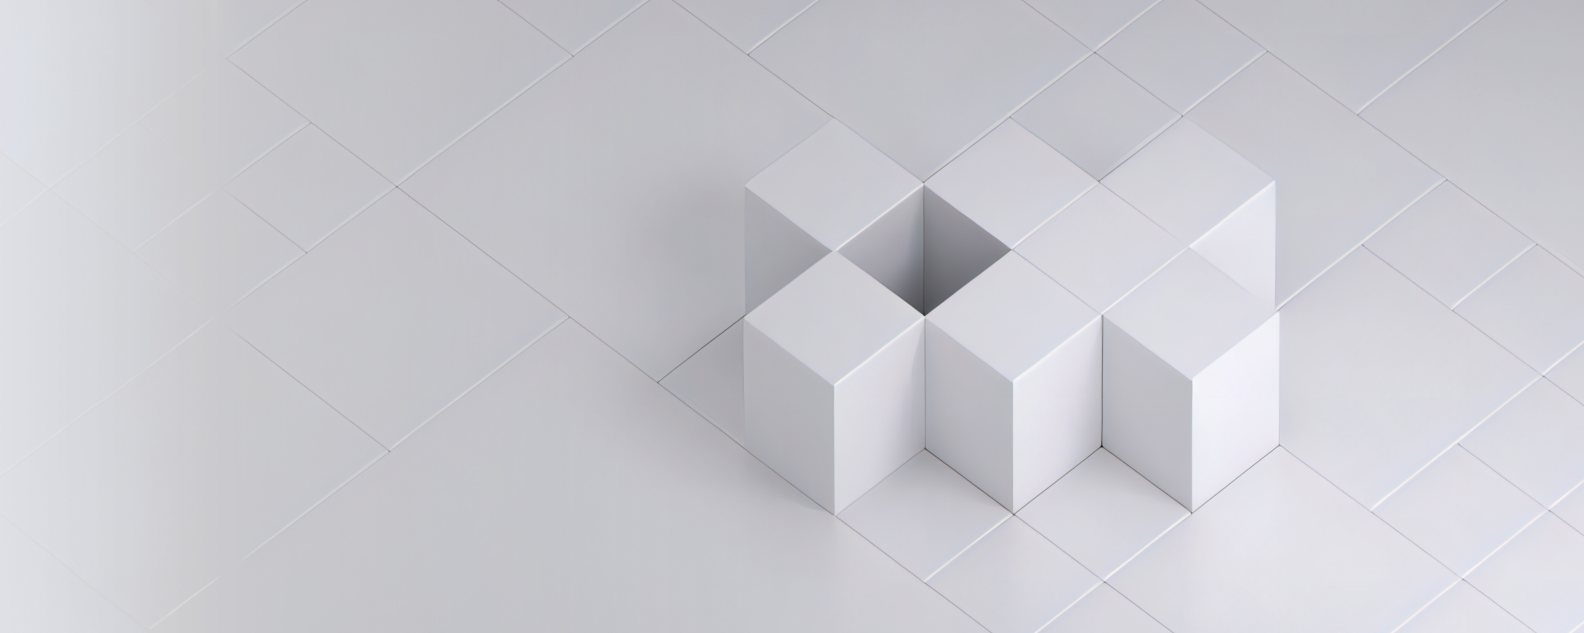 Immagine o foto realistica di sette cubi bianchi disposti su una griglia bianca di quadrati che compongono uno schema